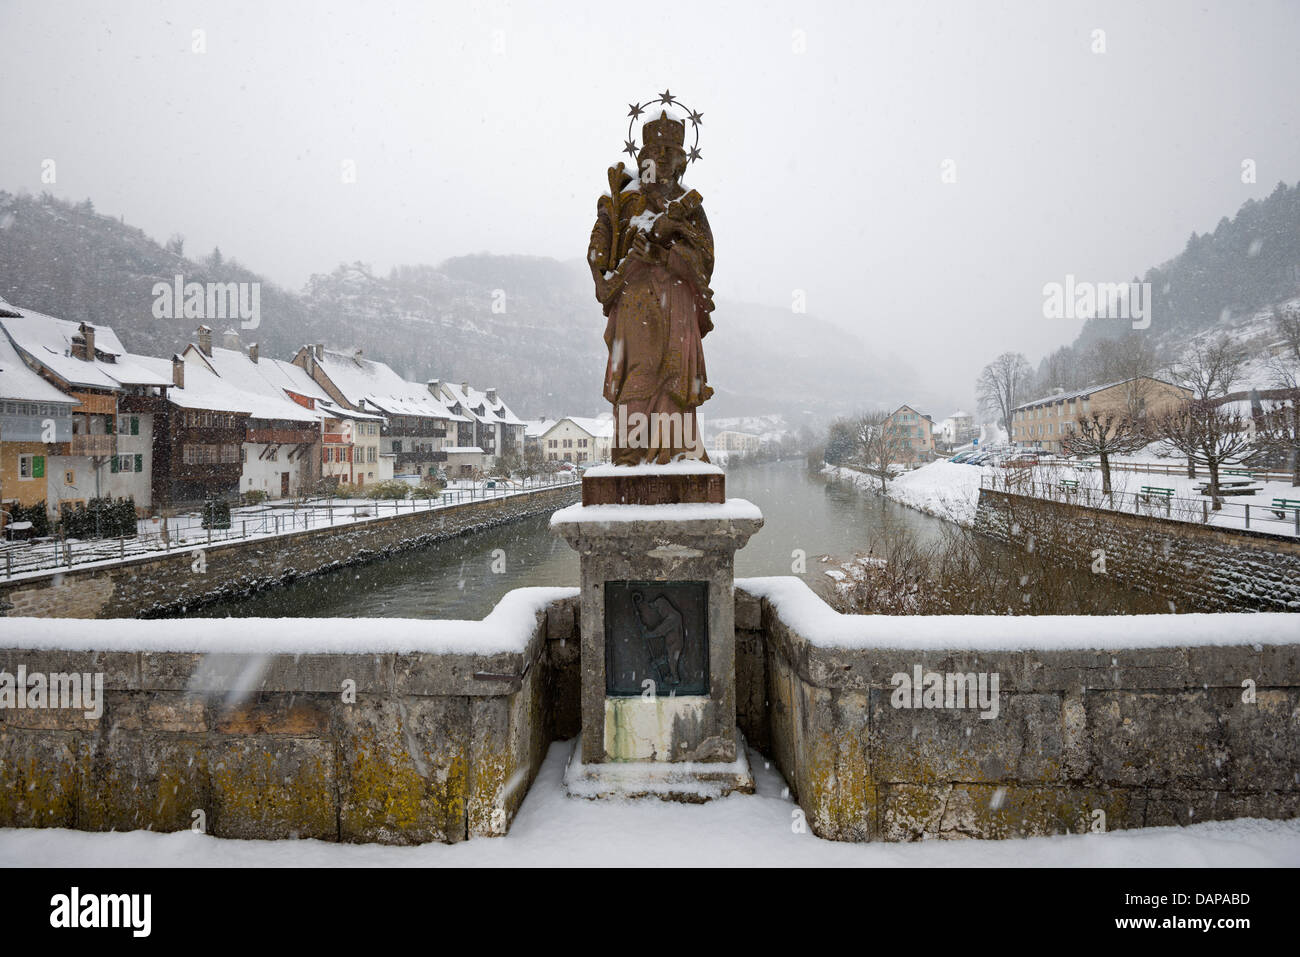 L'Europe, Suisse, Jura, St Ursanne, ville couverte de neige Banque D'Images